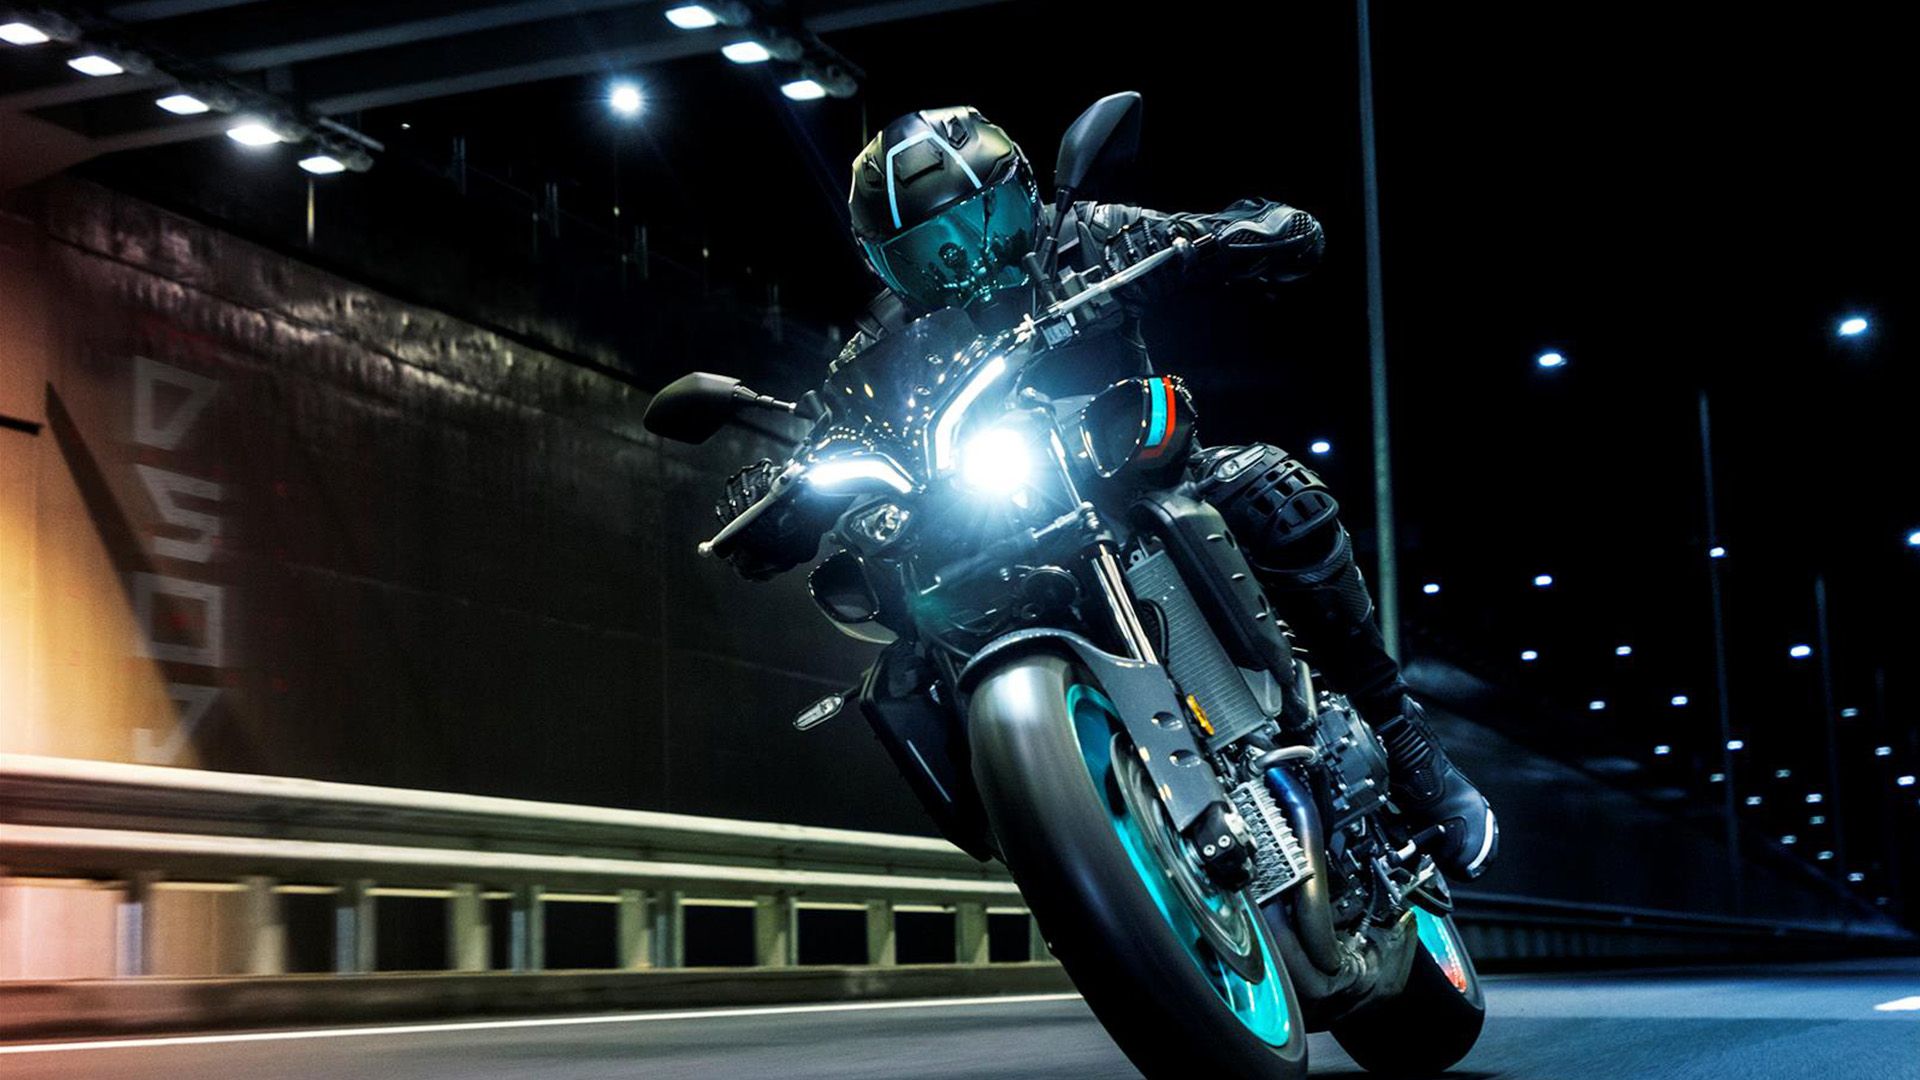 2023 Yamaha MT-10 naked bike action shot at night front view.